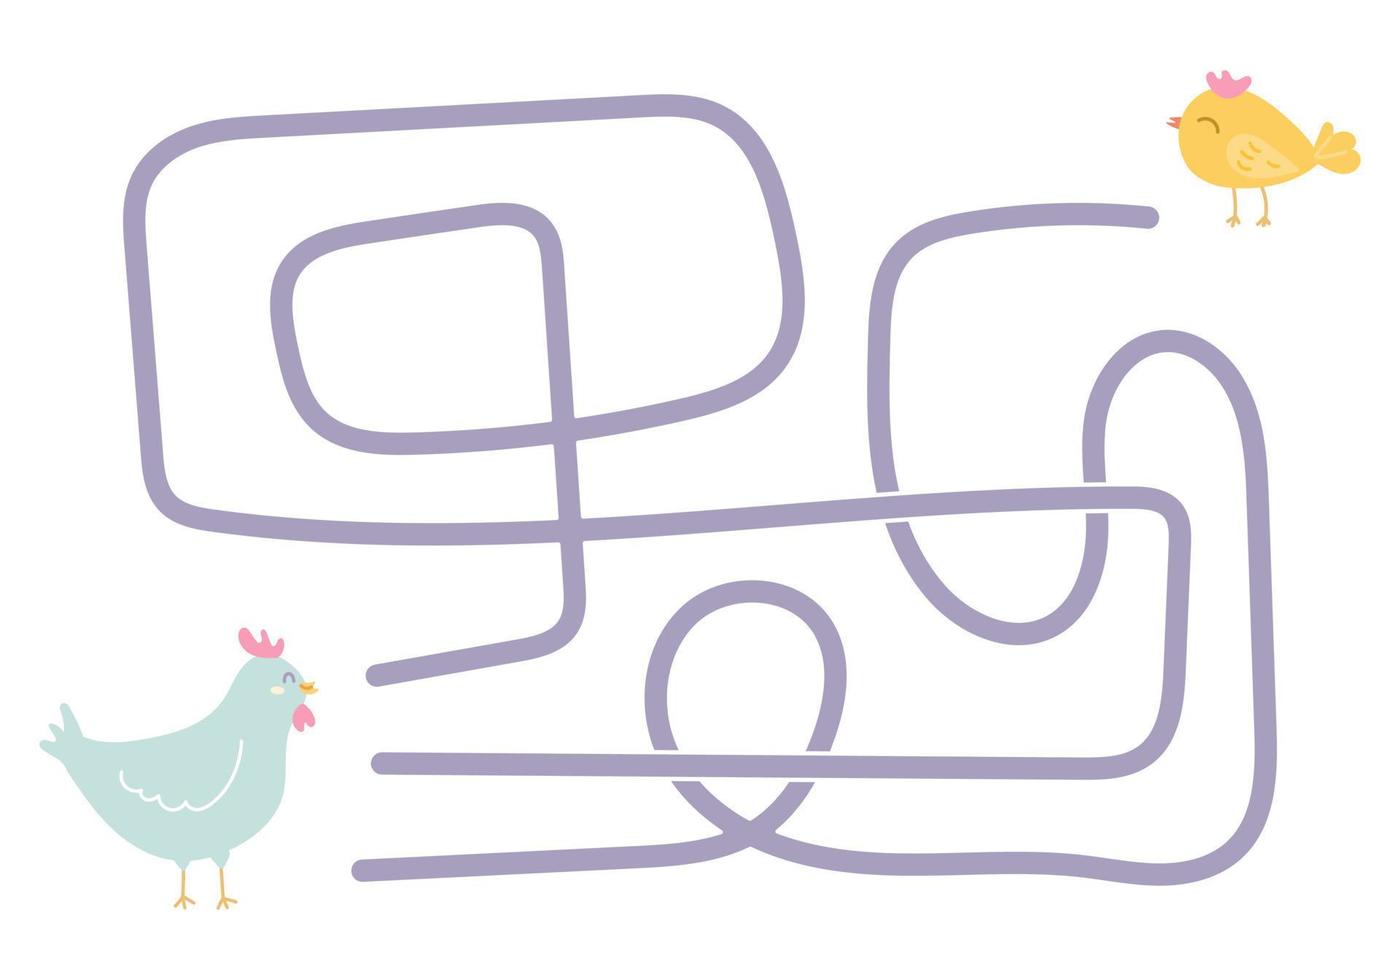 labirinto, aiuta il pollo a trovare la strada giusta per il bambino. ricerca logica per i bambini. illustrazione carina per libri per bambini, gioco educativo vettore